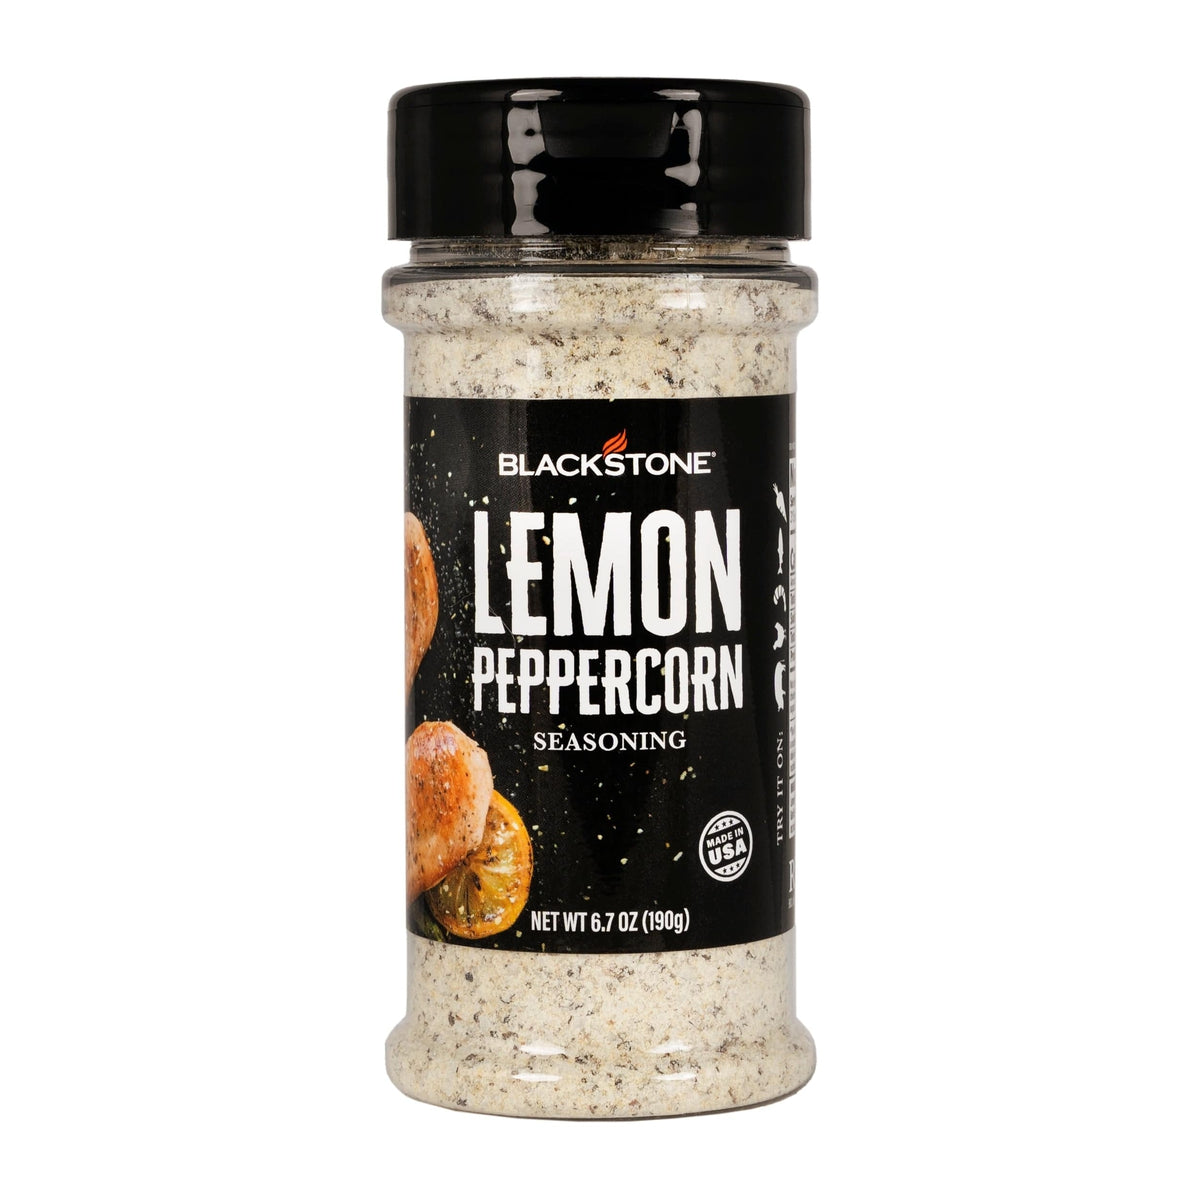 Blackstone Qualifies for Free Shipping Blackstone Lemon Peppercorn Seasoning #4231